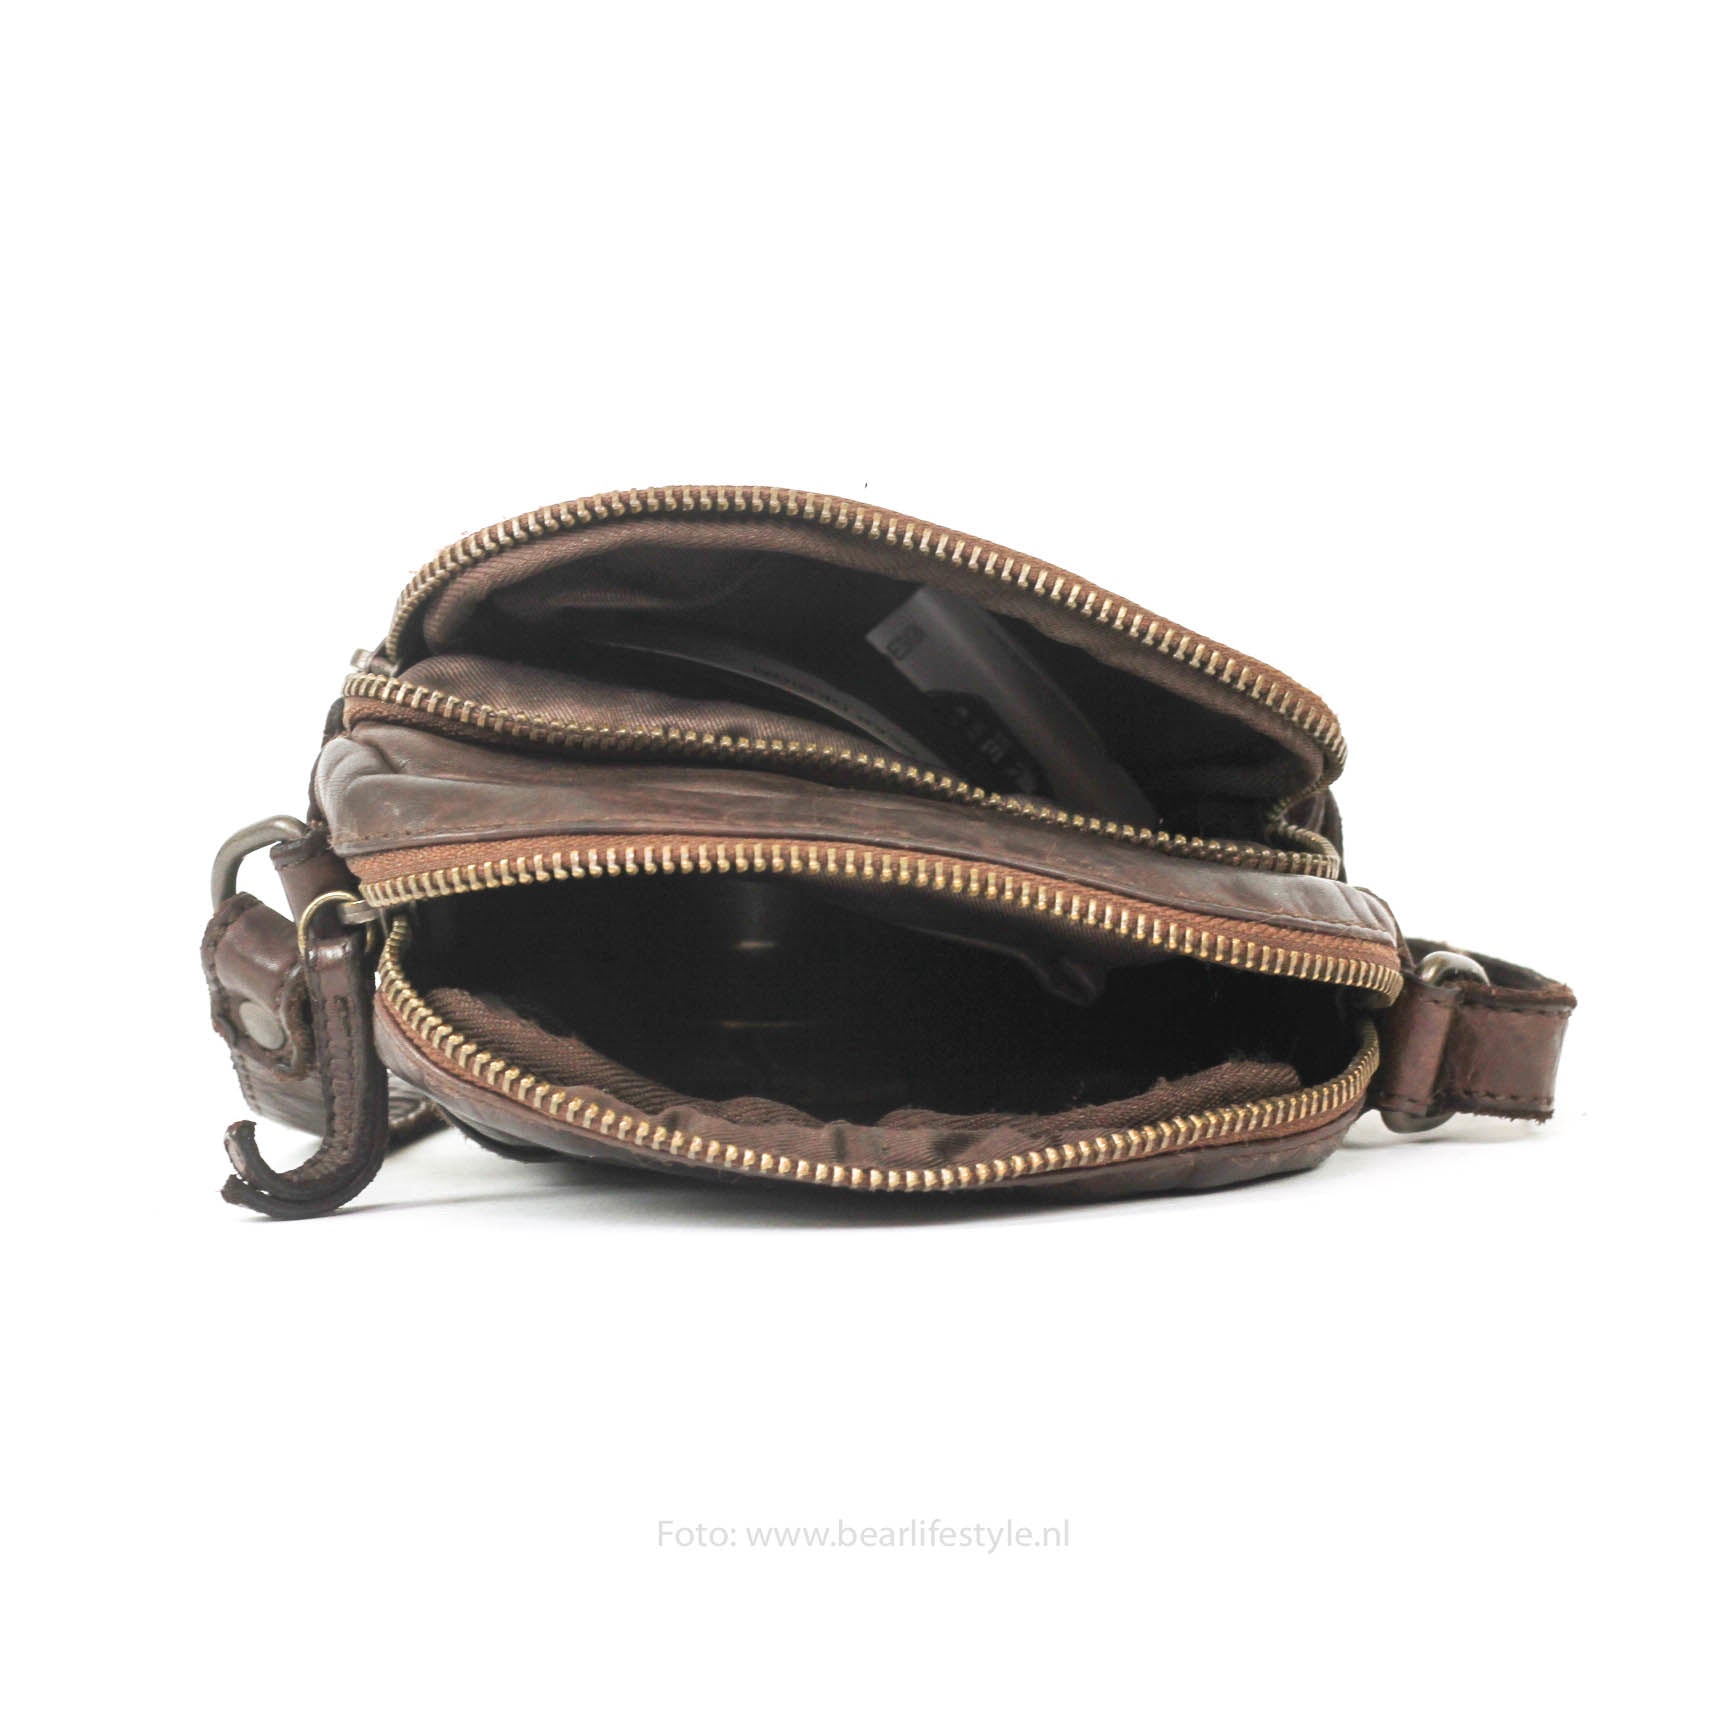 Shoulder bag 'Karin' dark brown - CL 5243